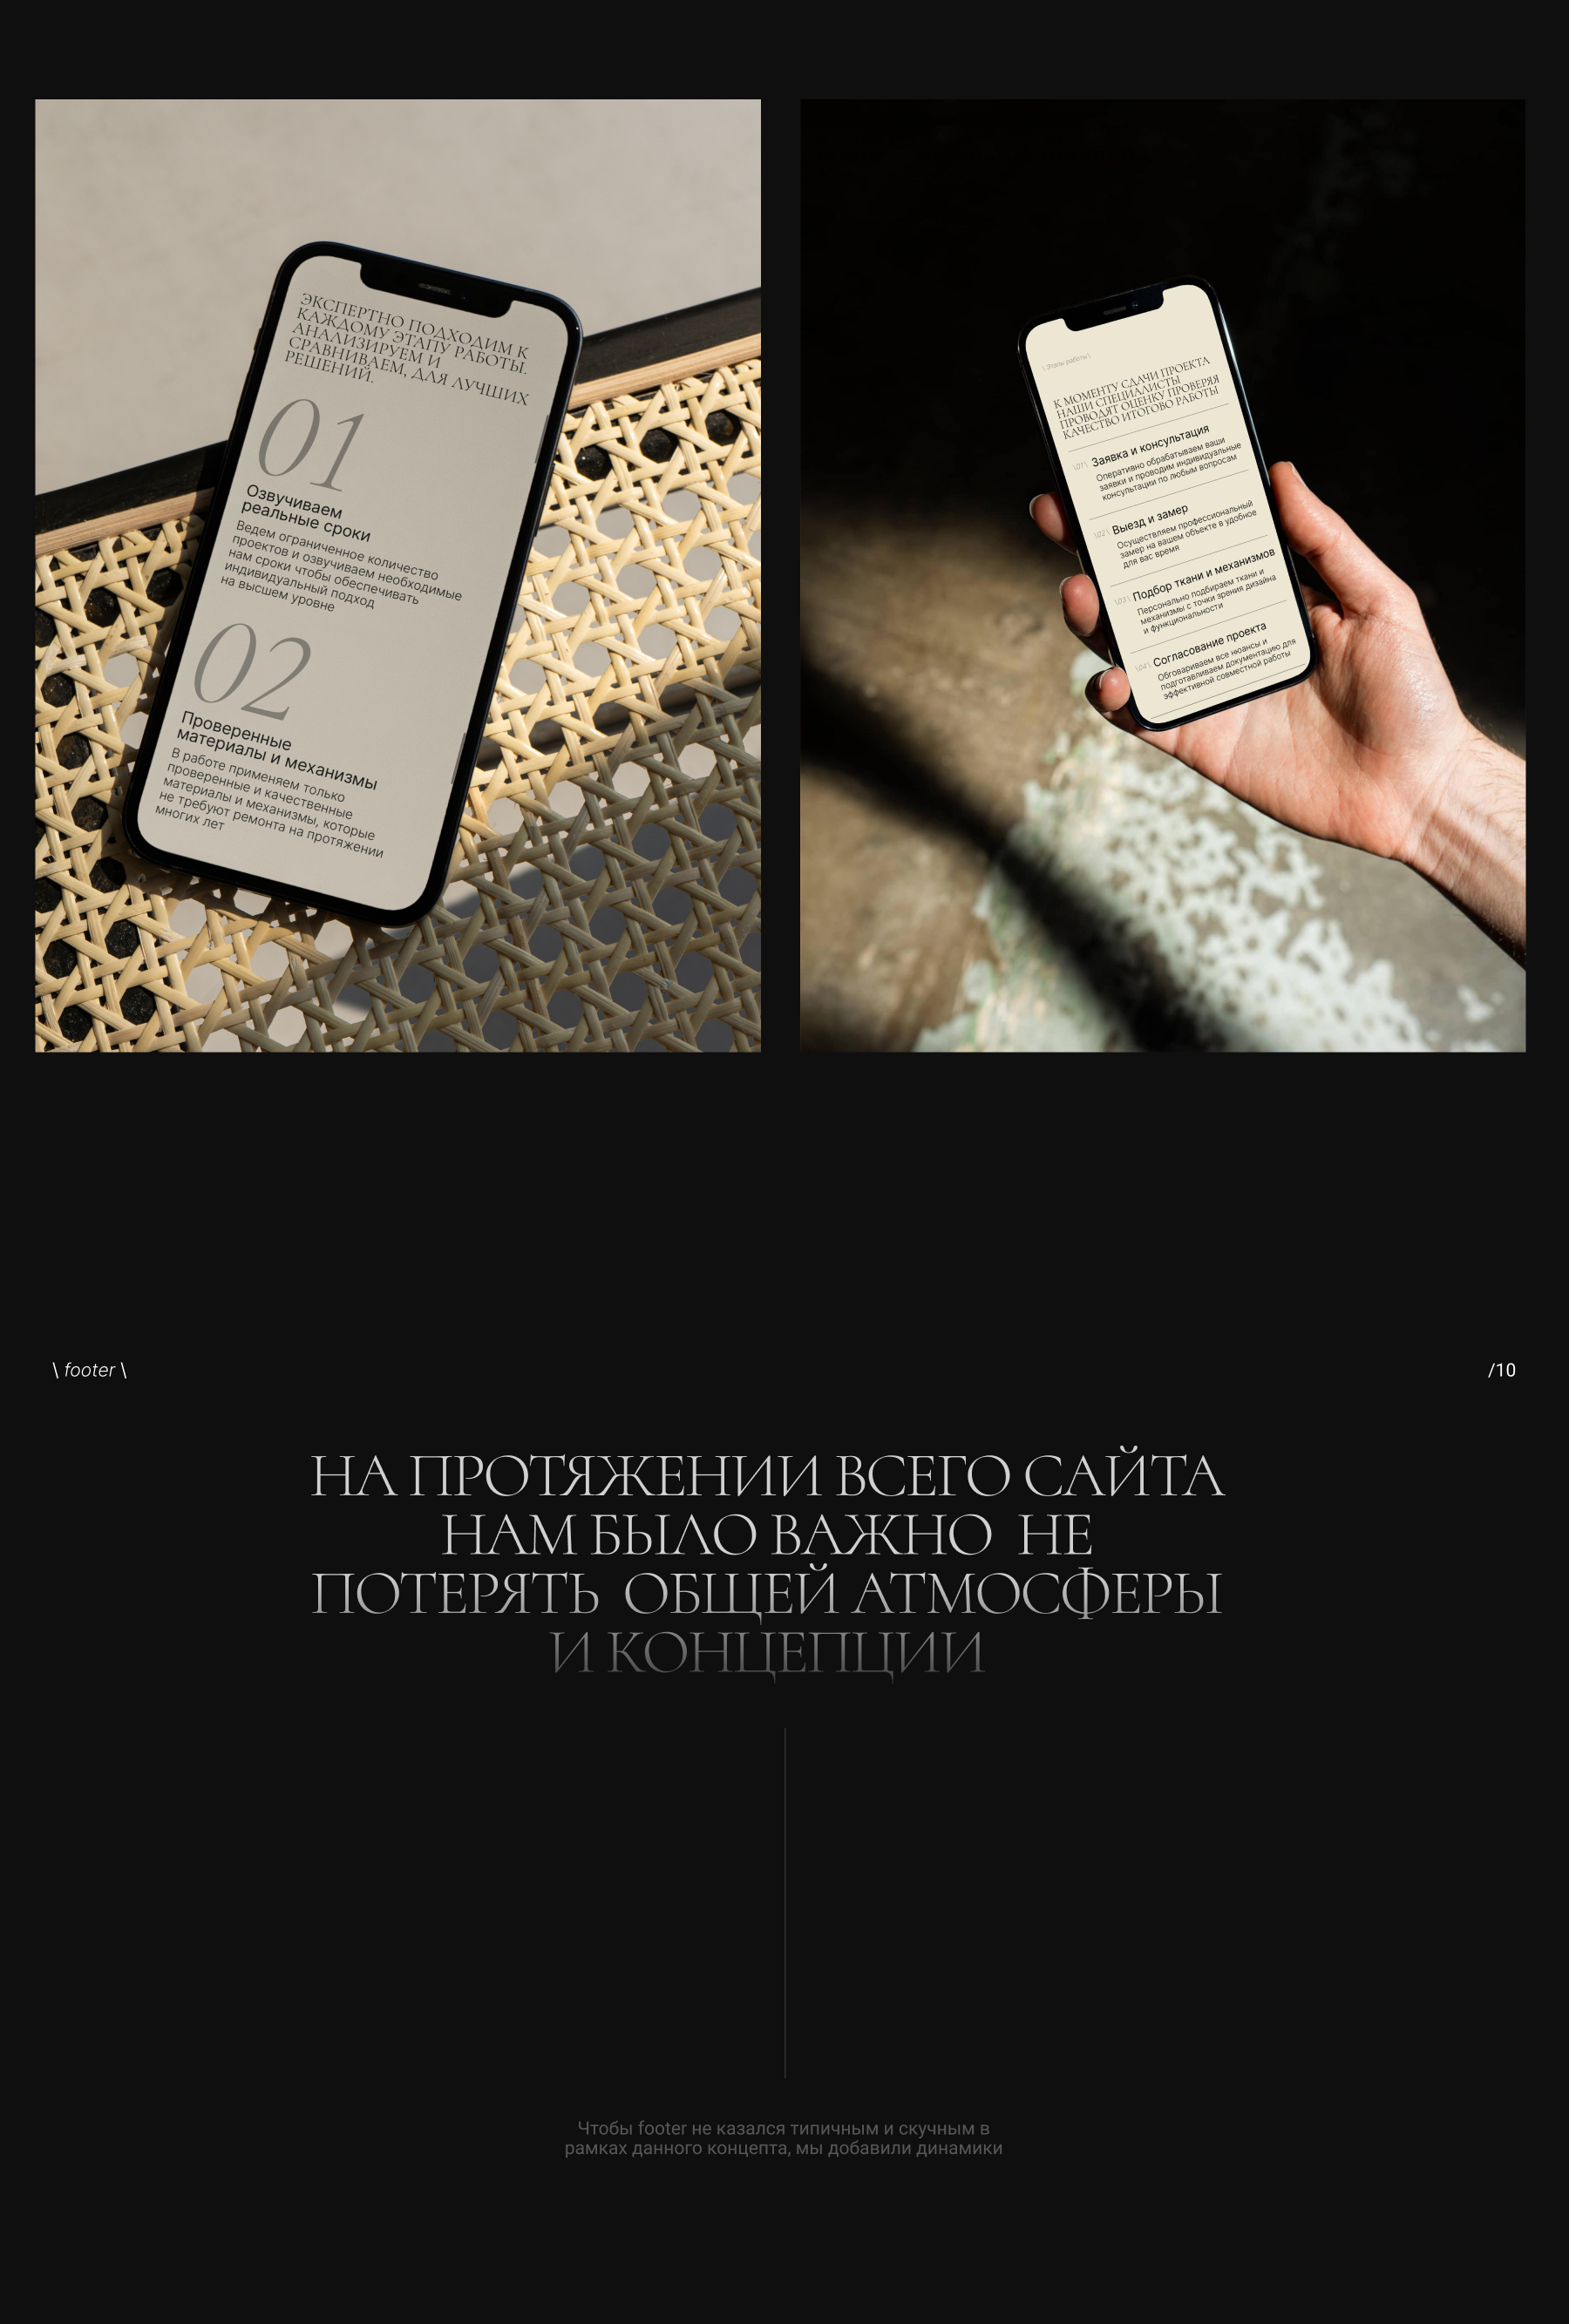 Eterea. Текстильный дизайн интерьера — Изображение №9 — Интерфейсы, Анимация на Dprofile